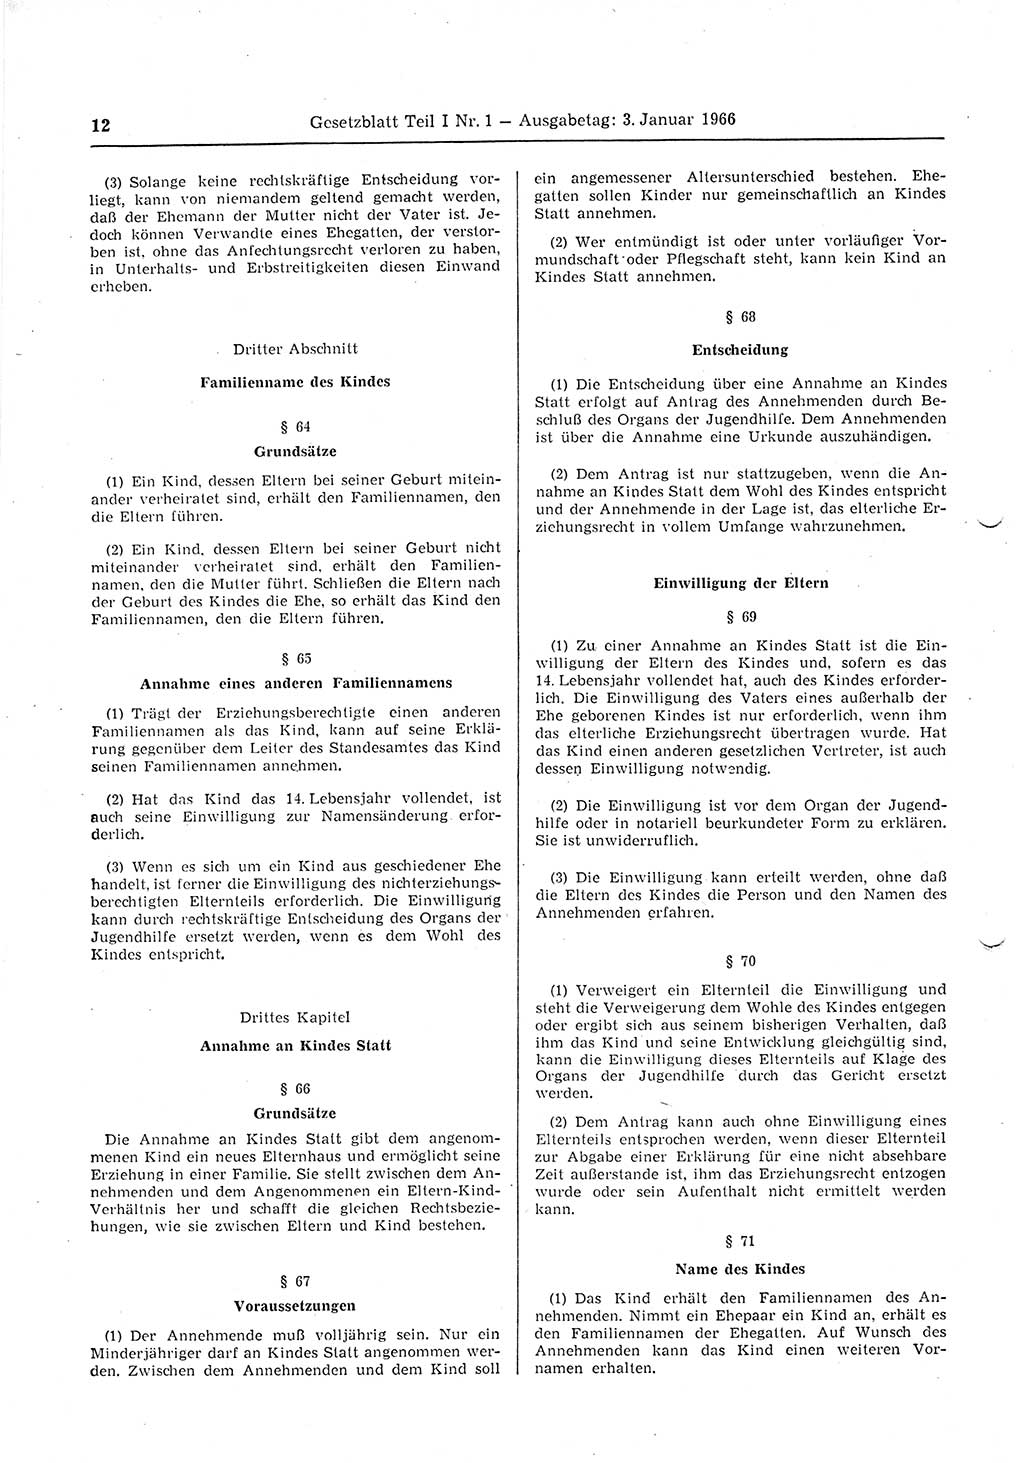 Gesetzblatt (GBl.) der Deutschen Demokratischen Republik (DDR) Teil Ⅰ 1966, Seite 12 (GBl. DDR Ⅰ 1966, S. 12)